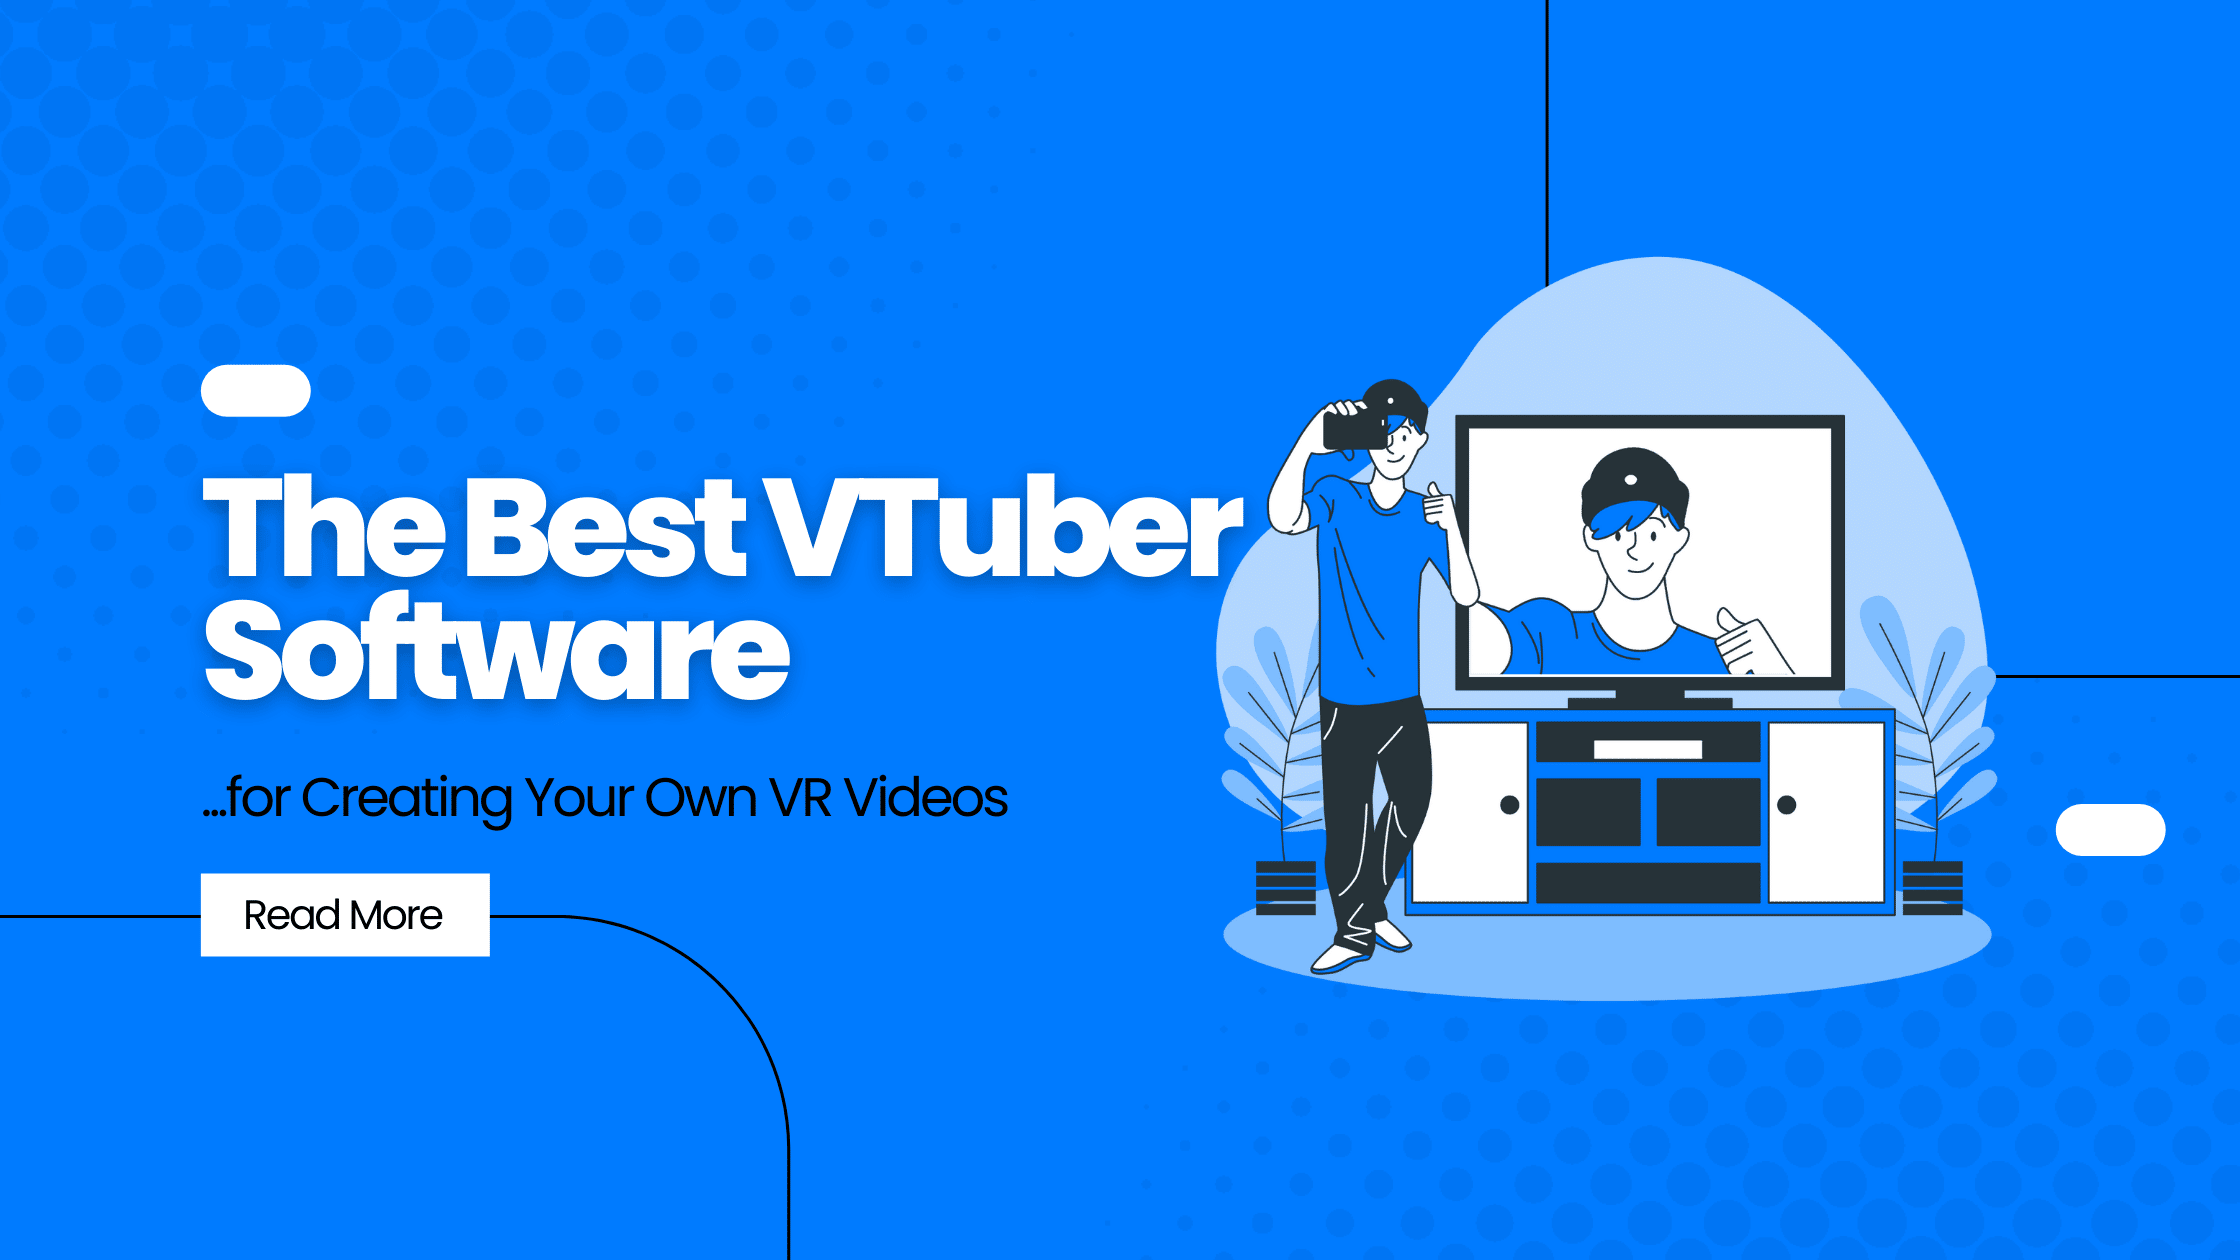 The Best VTuber Software